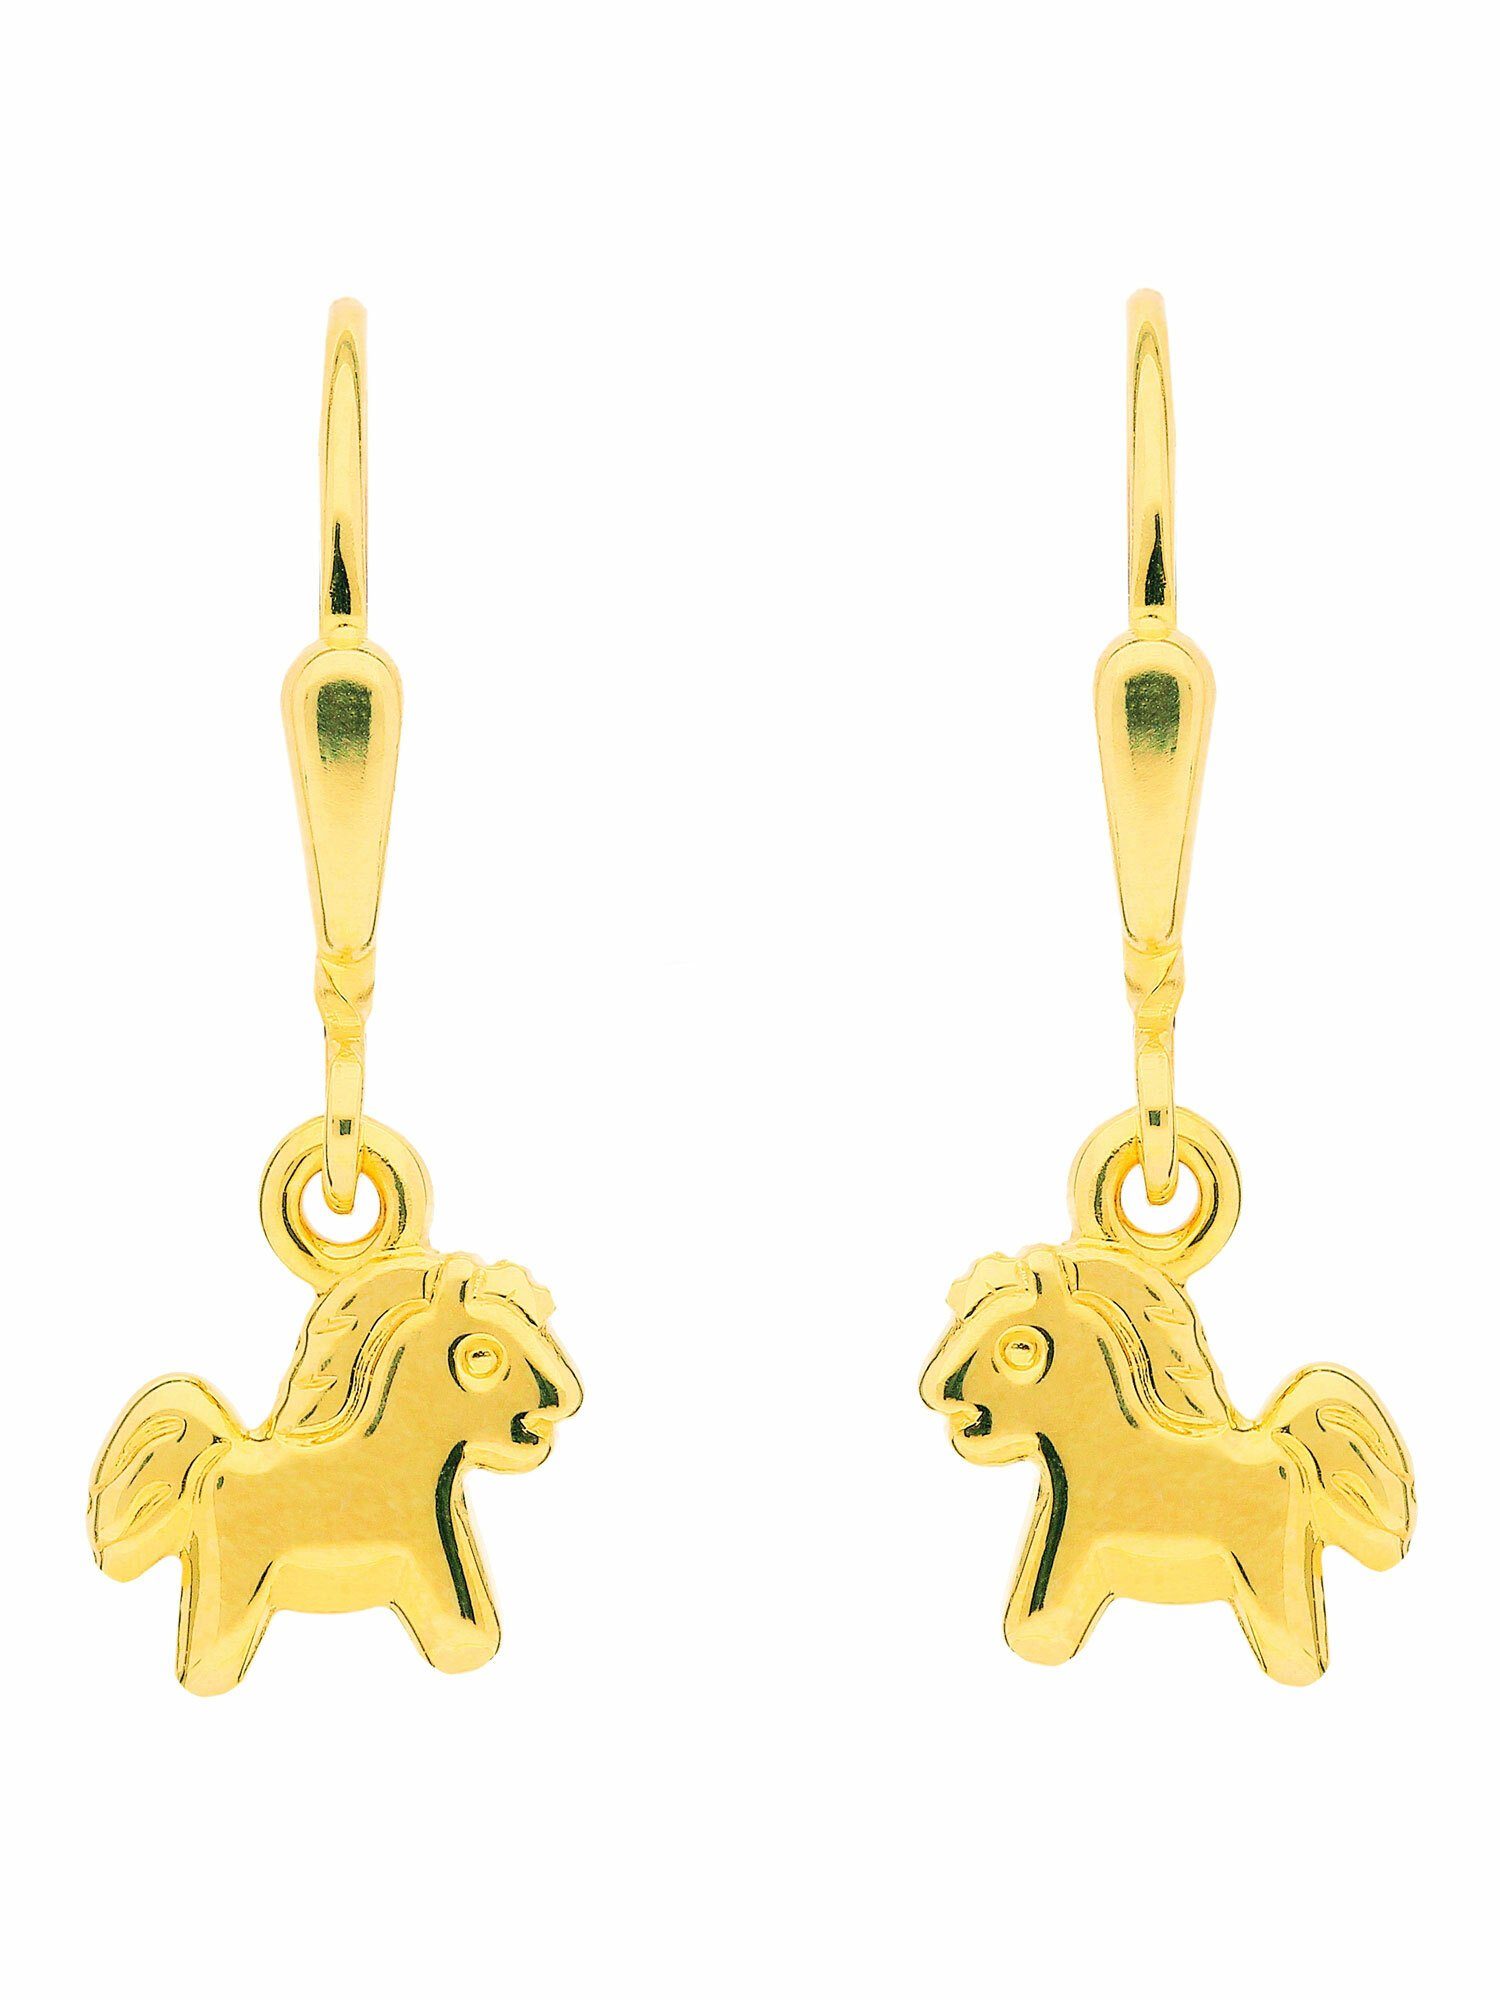 Damen Schmuck Adelia´s Paar Ohrhänger 1 Paar 333 Gold Ohrringe / Ohrhänger Pferd, 333 Gold Goldschmuck für Damen